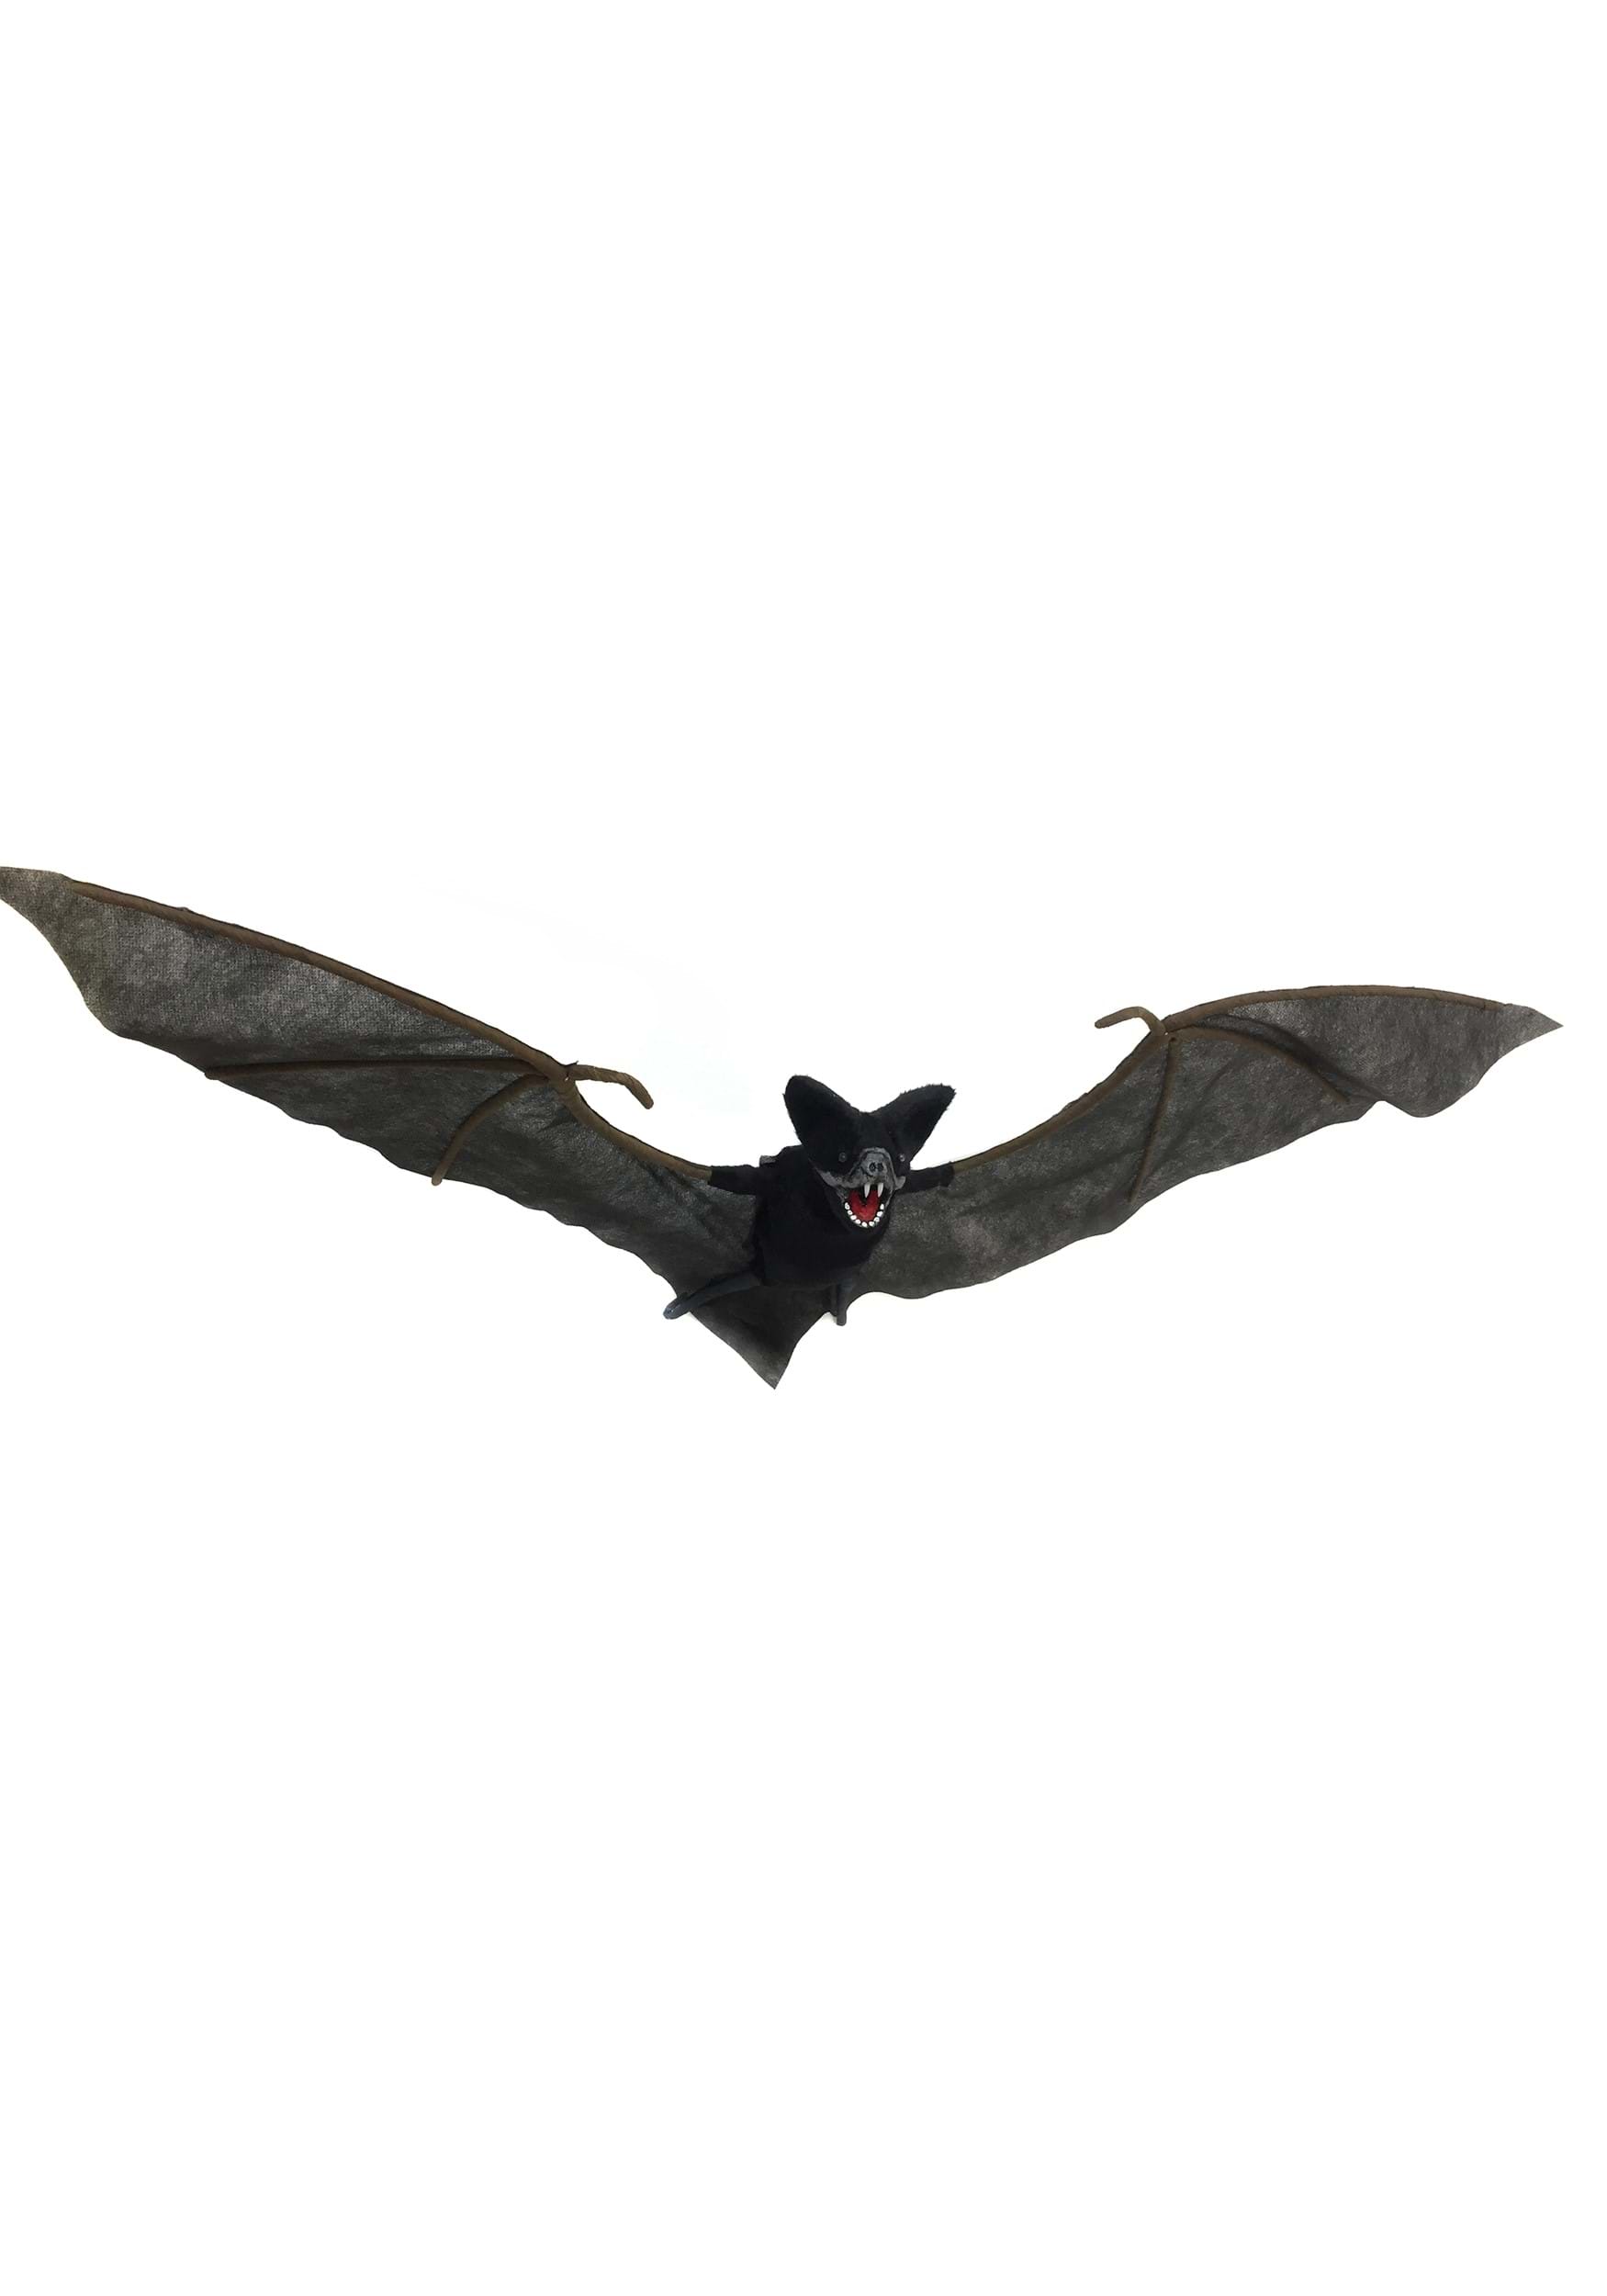 Animated Bat 35"